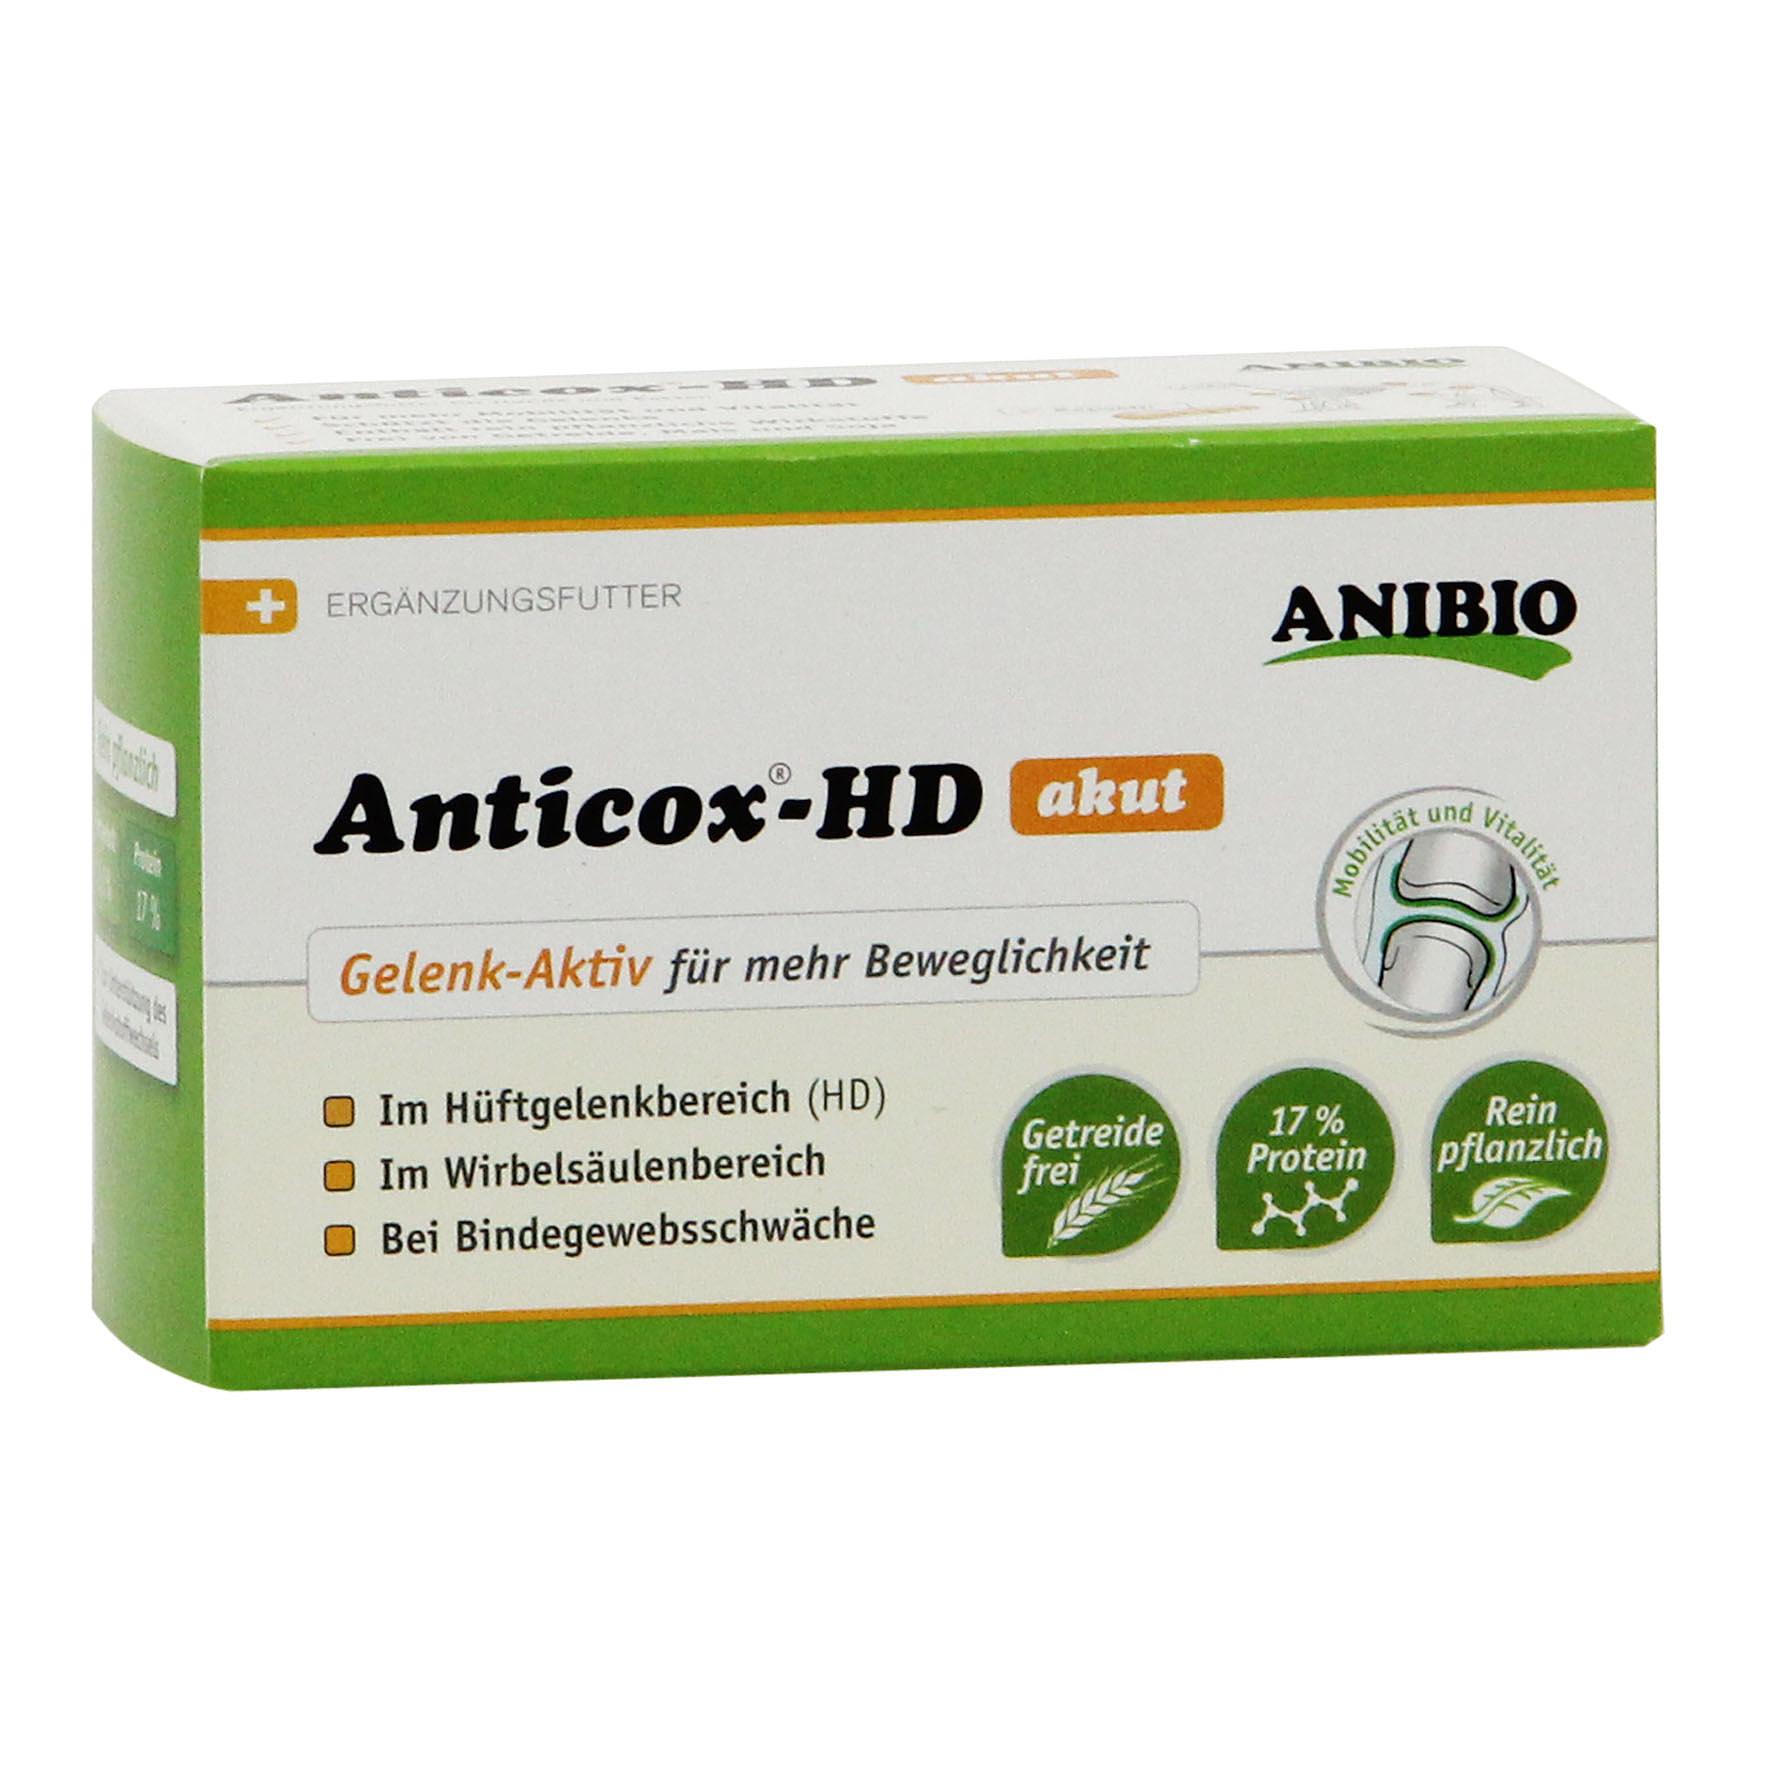 Anibio AnticoxHD akut bestellen petfriends.ch